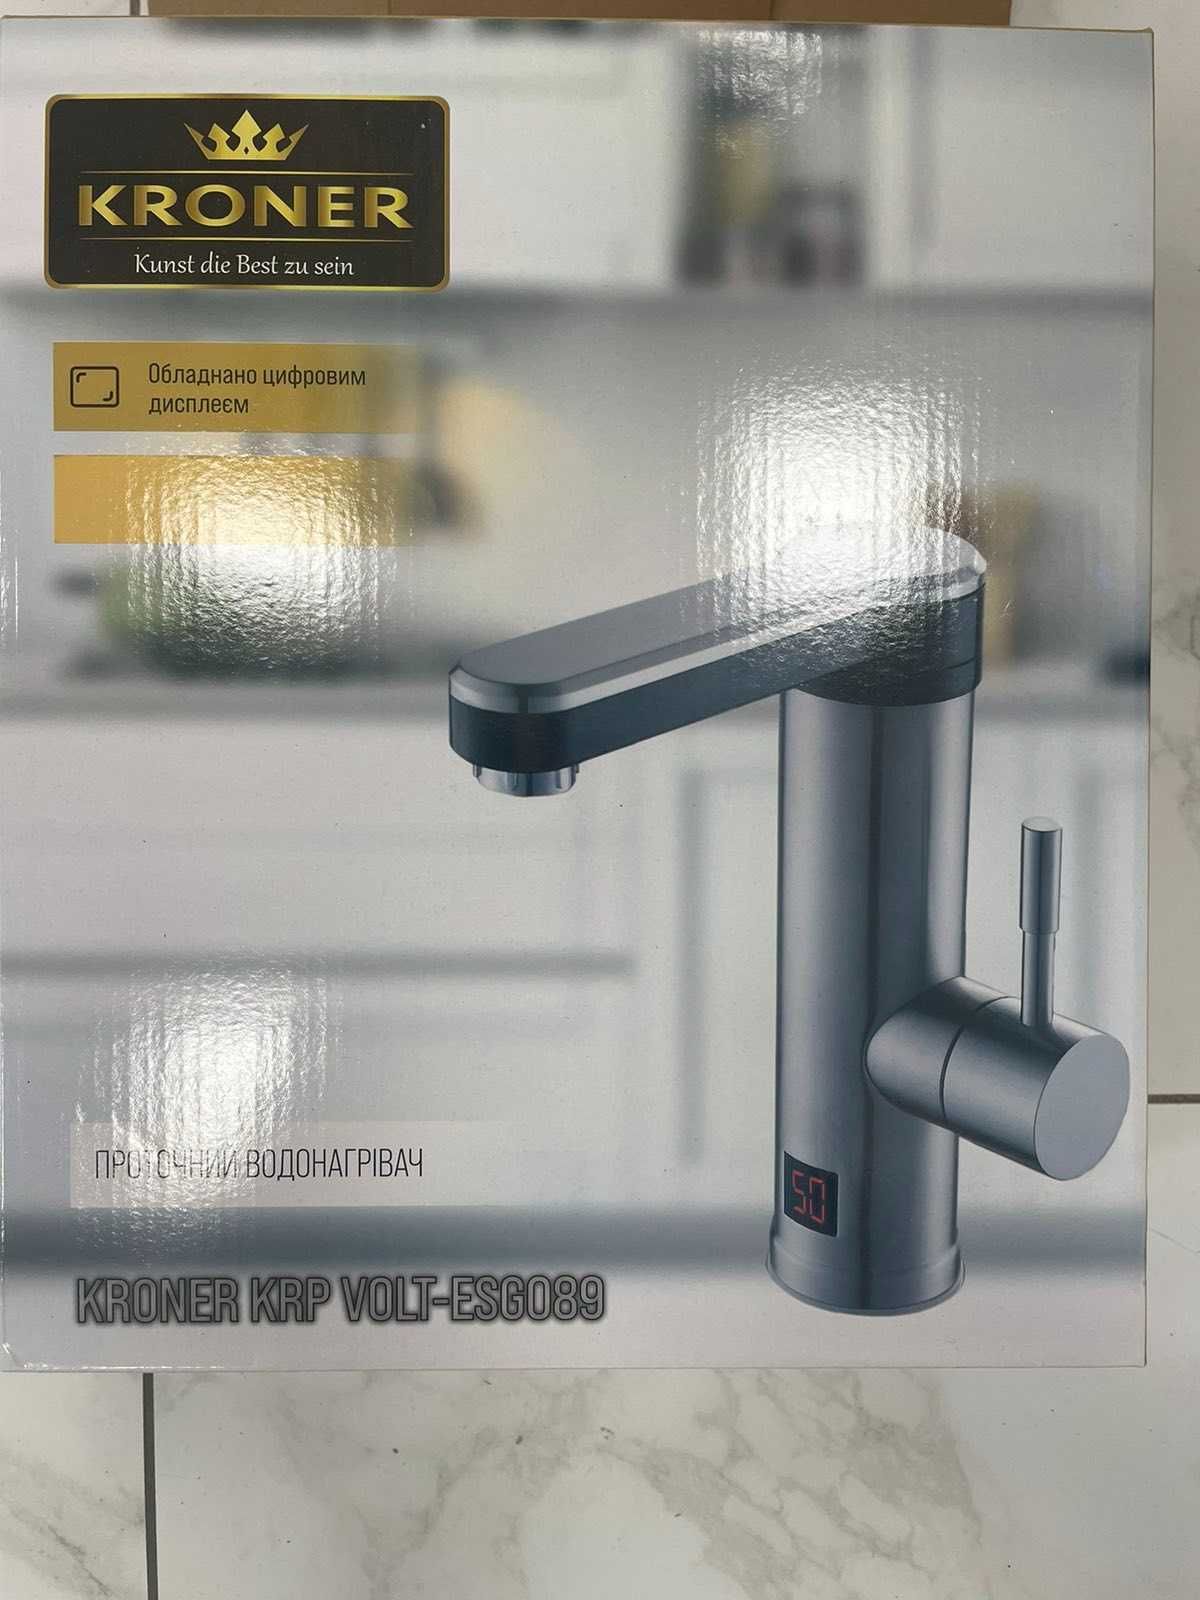 Проточный водонагреватель Kroner ESG089 с дисплеем, корзина и дозатор.